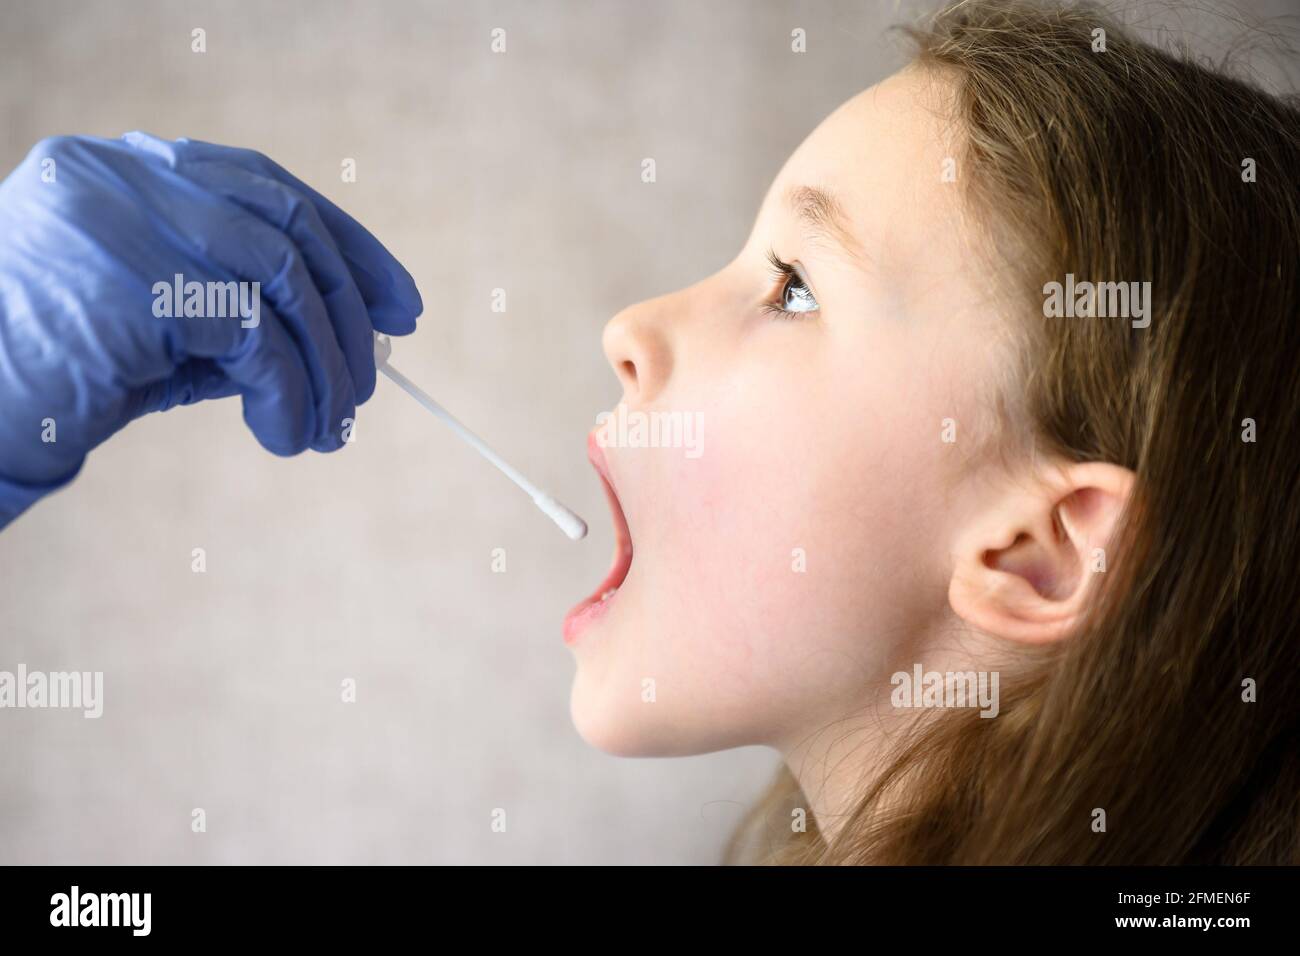 Das Kind öffnet den Mund für den COVID-19 PCR-Test, der Arzt hält während der Coronavirus-Pandemie den Tupfer für die Speichelprobe des niedlichen Kindes. Krankenschwester Hand und kleines Mädchen fac Stockfoto